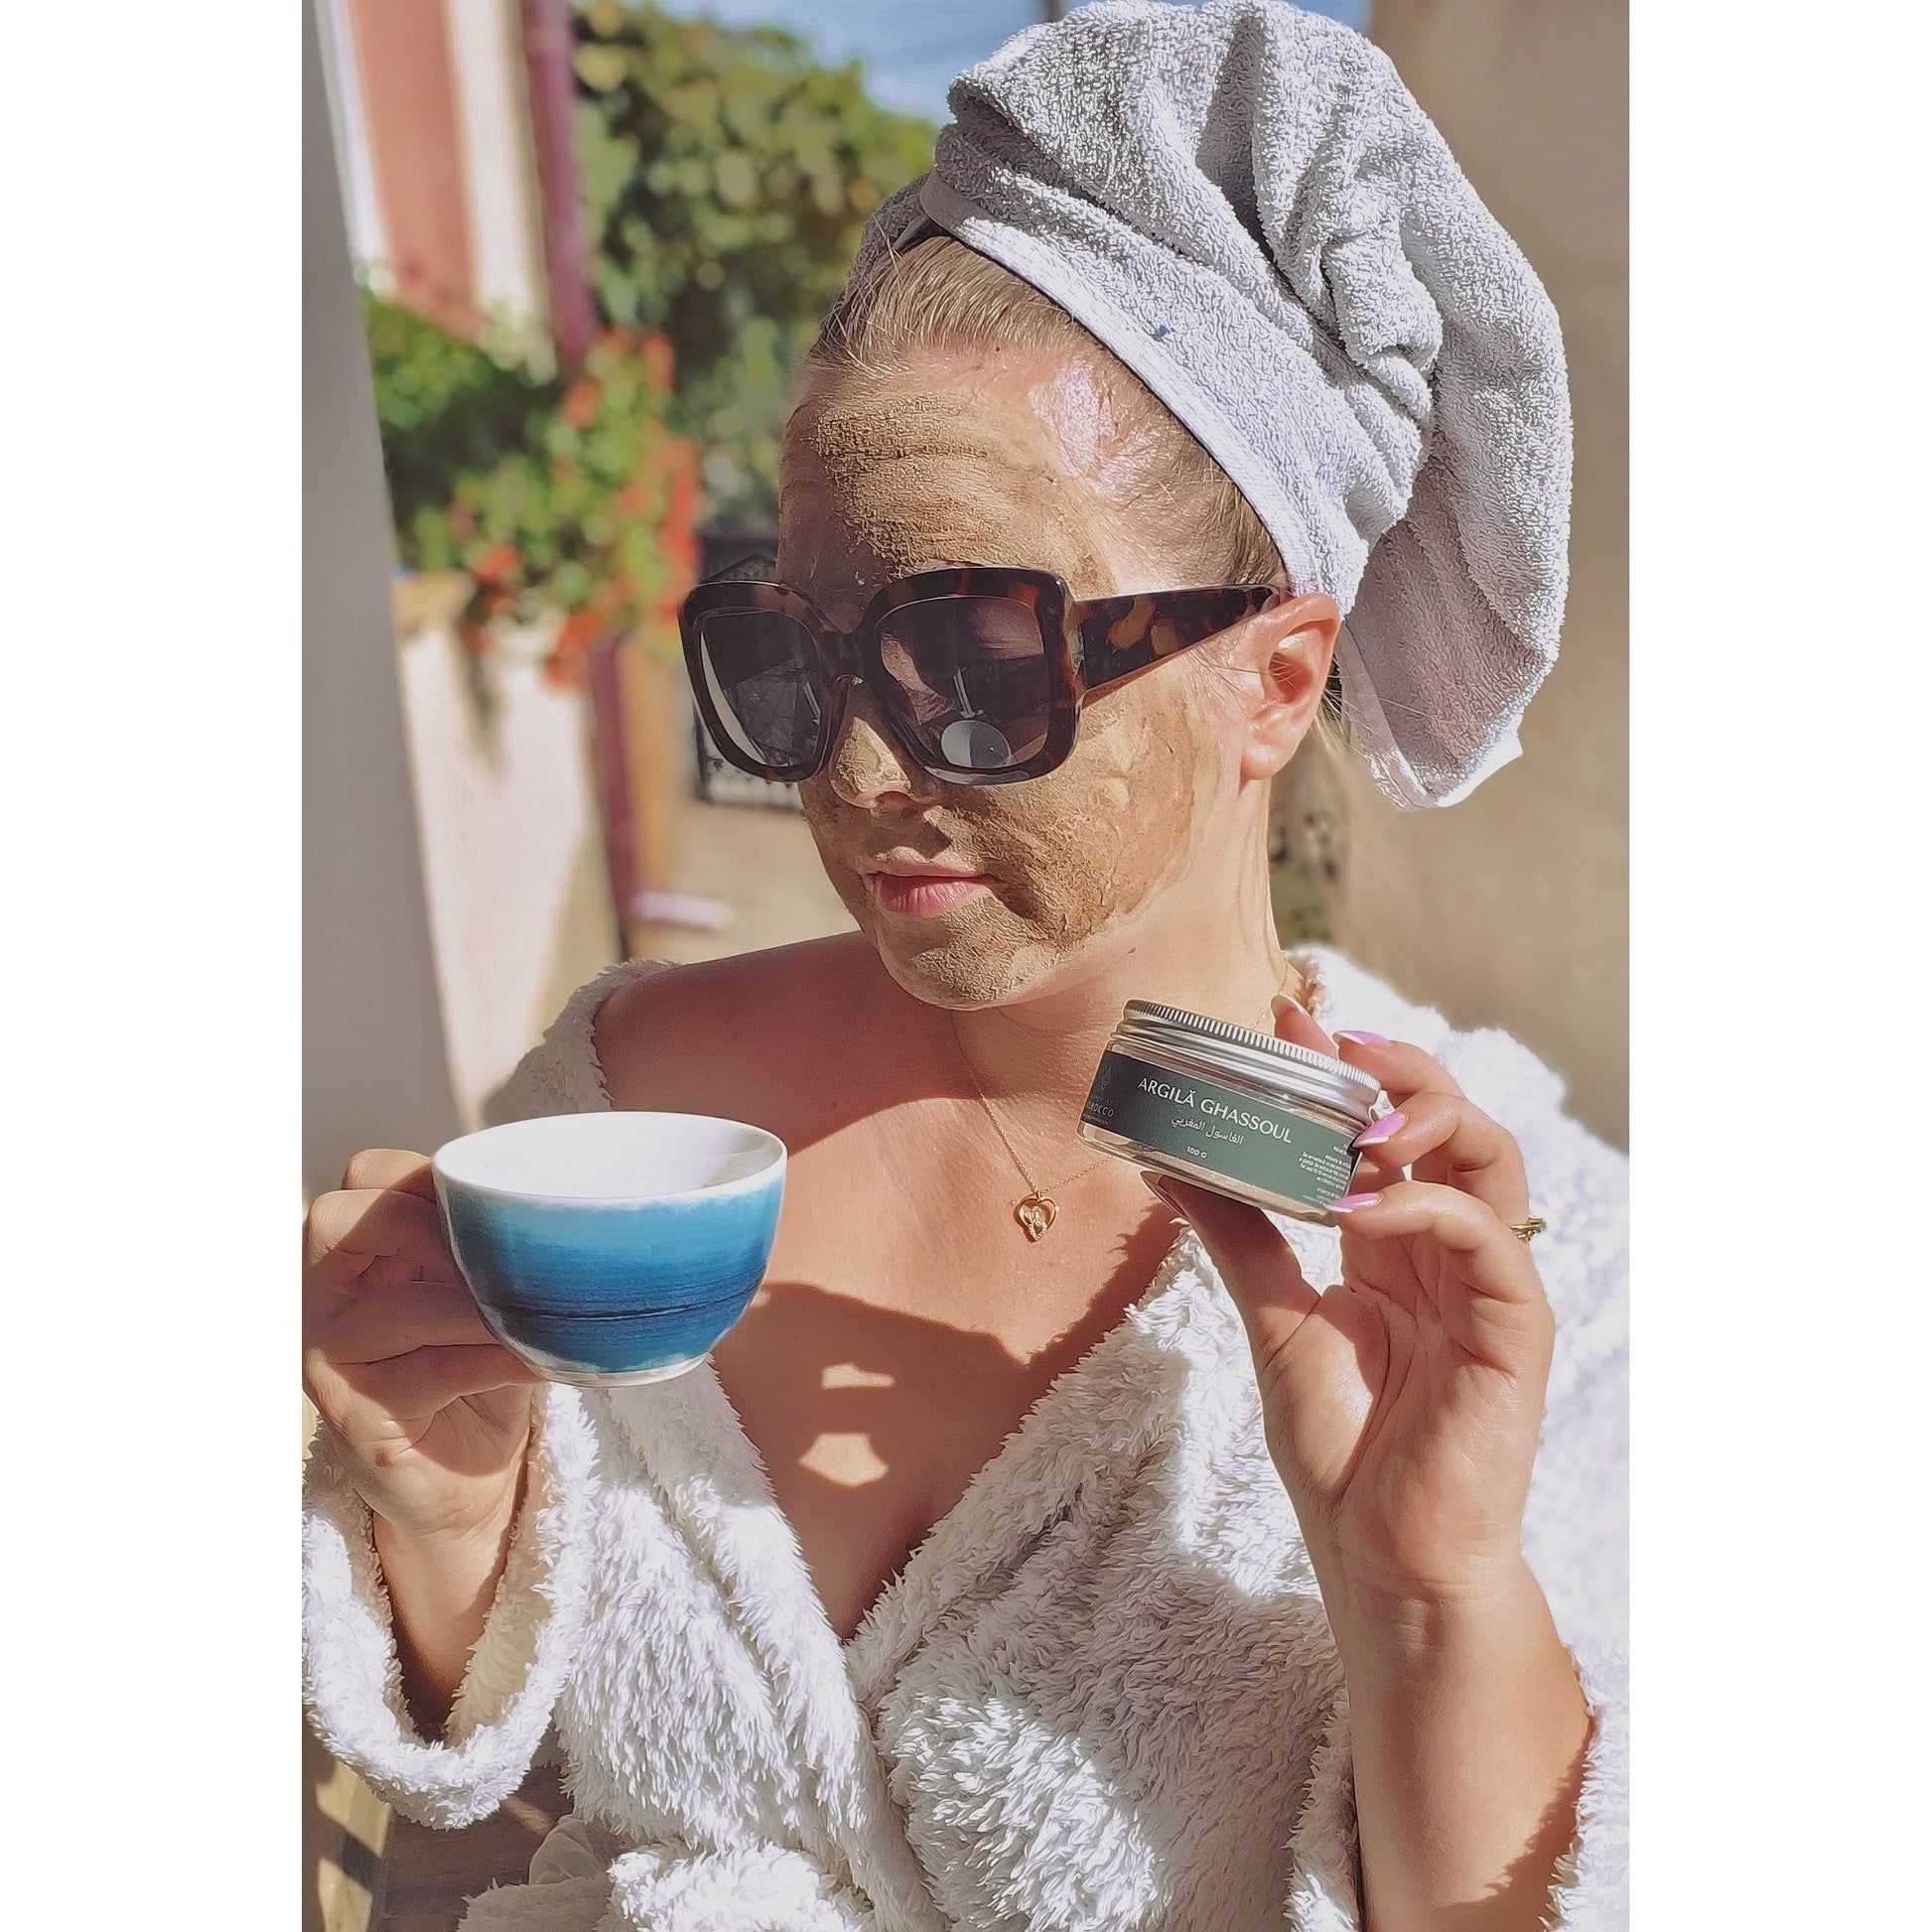 Fotografia captează o femeie în halat de baie alb, cu un prosop înfășurat pe cap, purtând ochelari de soare mari, și având aplicată o mască de argilă pe față. Ea ține o ceașcă de cafea sau ceai într-o mână și un recipient de 'ARGILĂ GHASSOUL' în cealaltă. Scena se desfășoară pe o terasă luminoasă, sub razele soarelui, sugerând o dimineață relaxantă sau un ritual de înfrumusețare în aer liber.